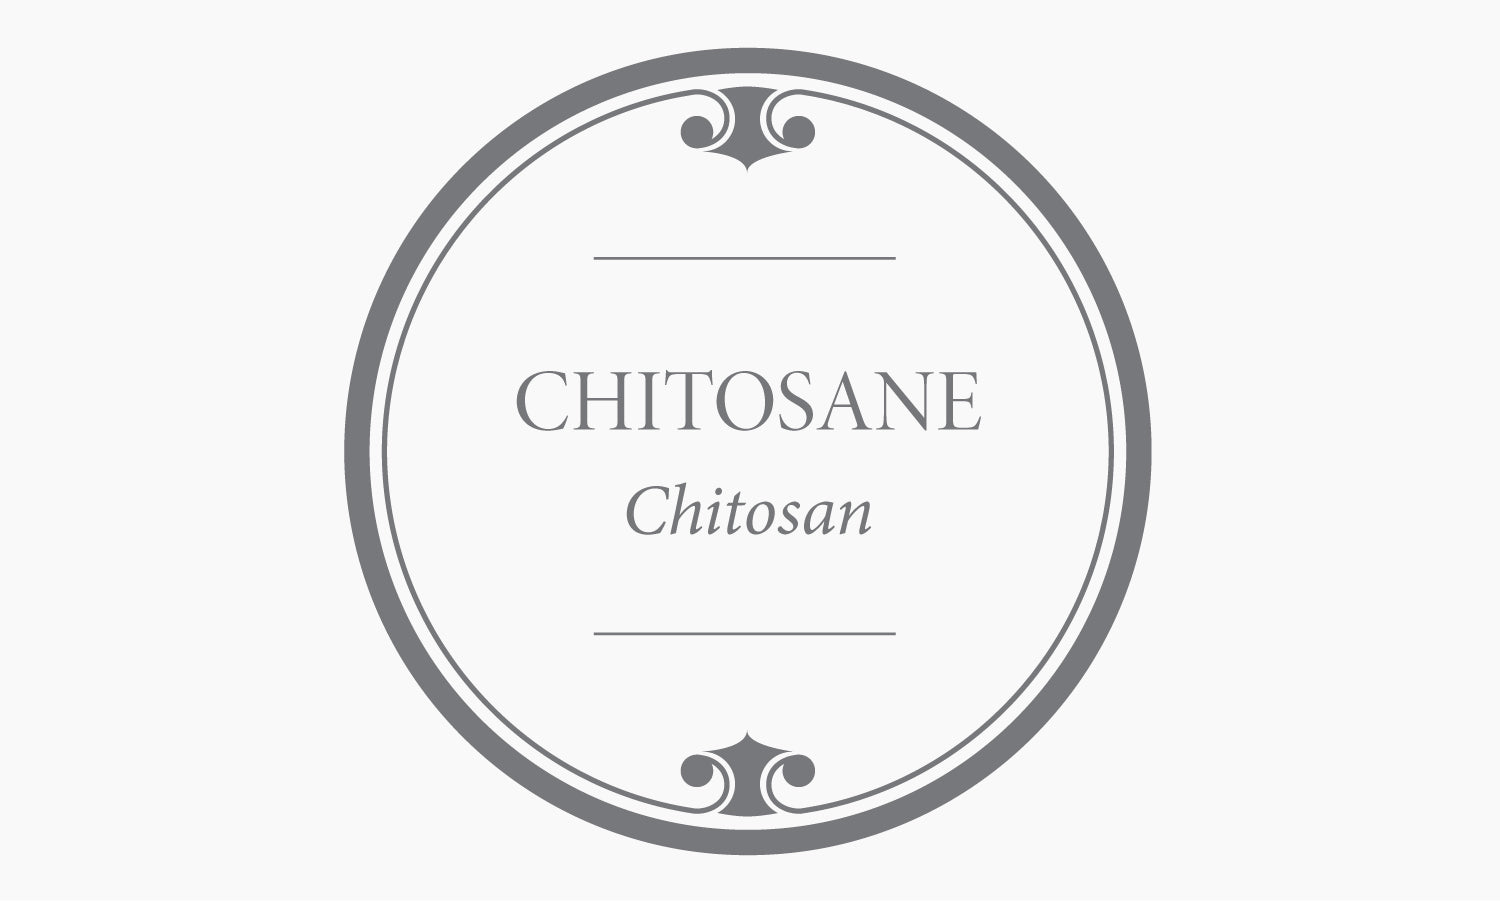 Chitosane